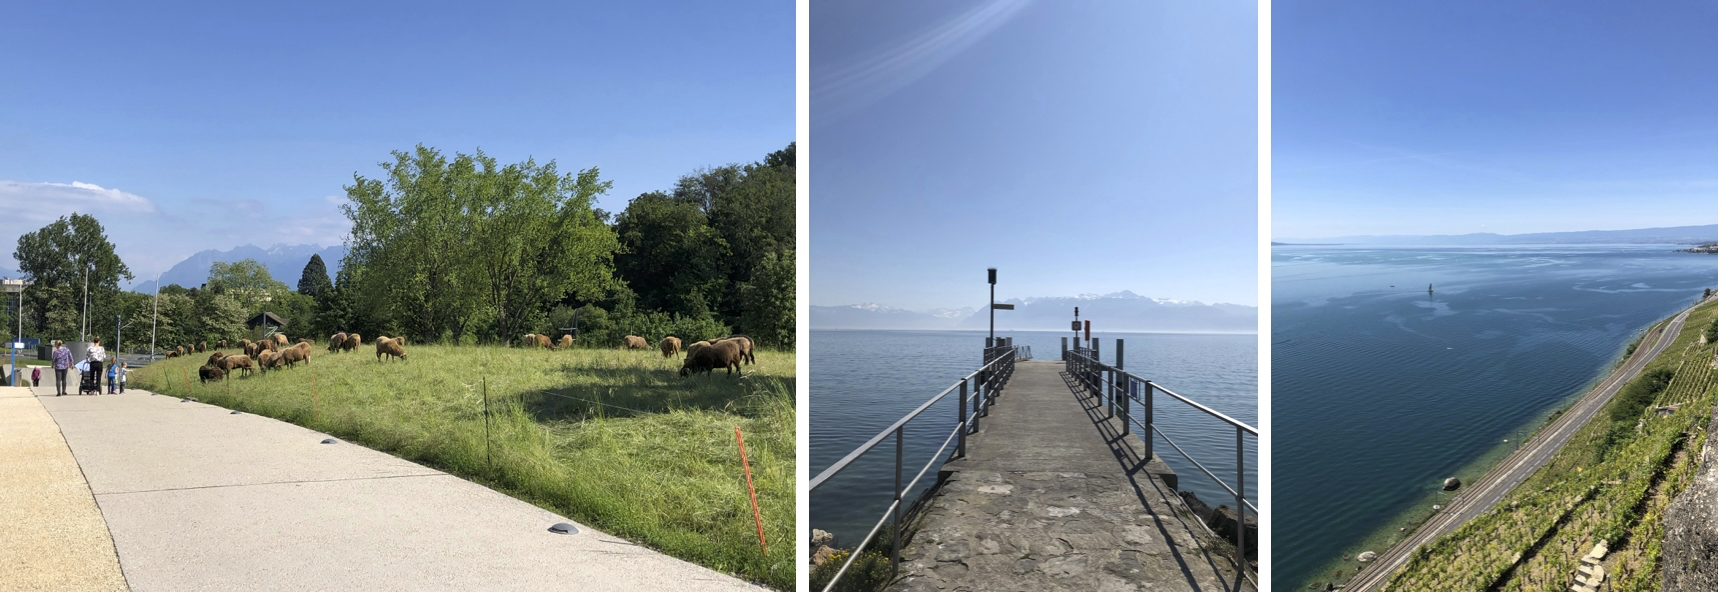 図2: (左)キャンパス周辺には時々、草を適切な長さに保つために羊が放たれていた。牧歌的。   (中) キャンパスから10-15分程度歩くと湖まで行ける。湖の向こうにある街はミネラルウォーターで有名なEvian   (右) 電車で10分程度行くとワイン畑に行ける。とても良い散歩コース。スイスワインはとても美味しいけど、国内で消費され尽くすため国外ではあまり見かけない。